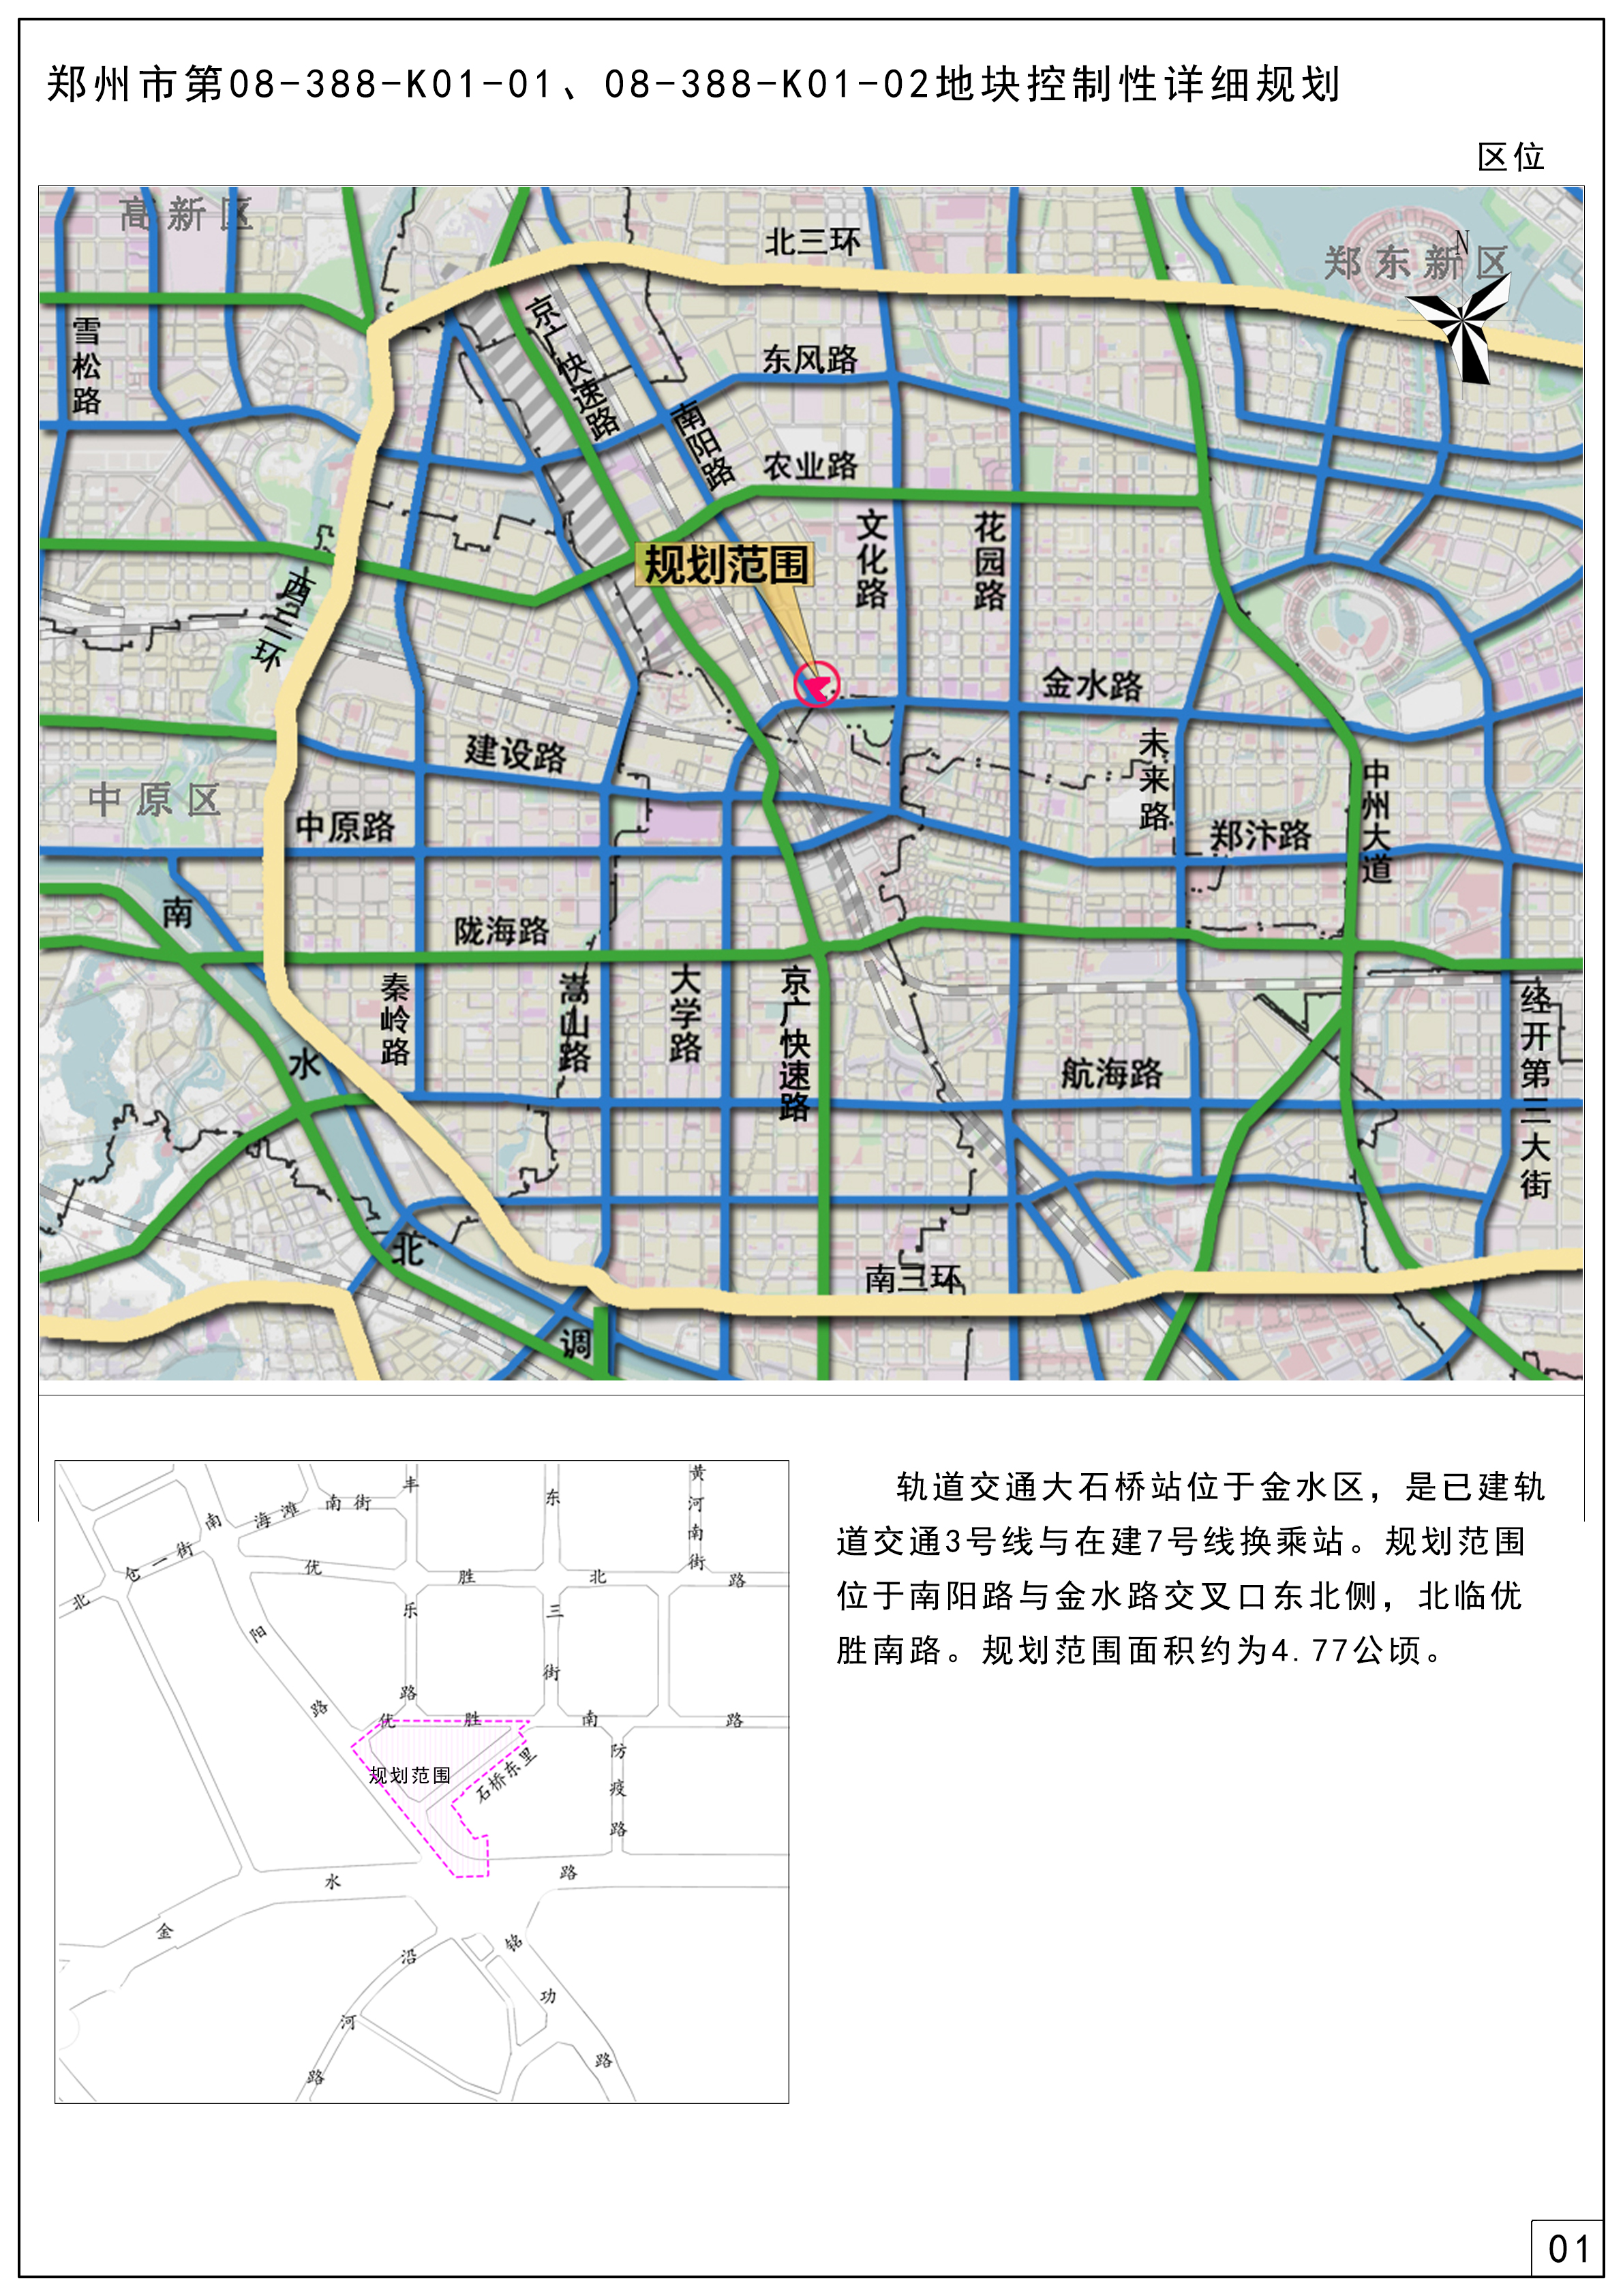 郑州市第08-388-K01-01、08-388-K01-02地块控制性详细规划